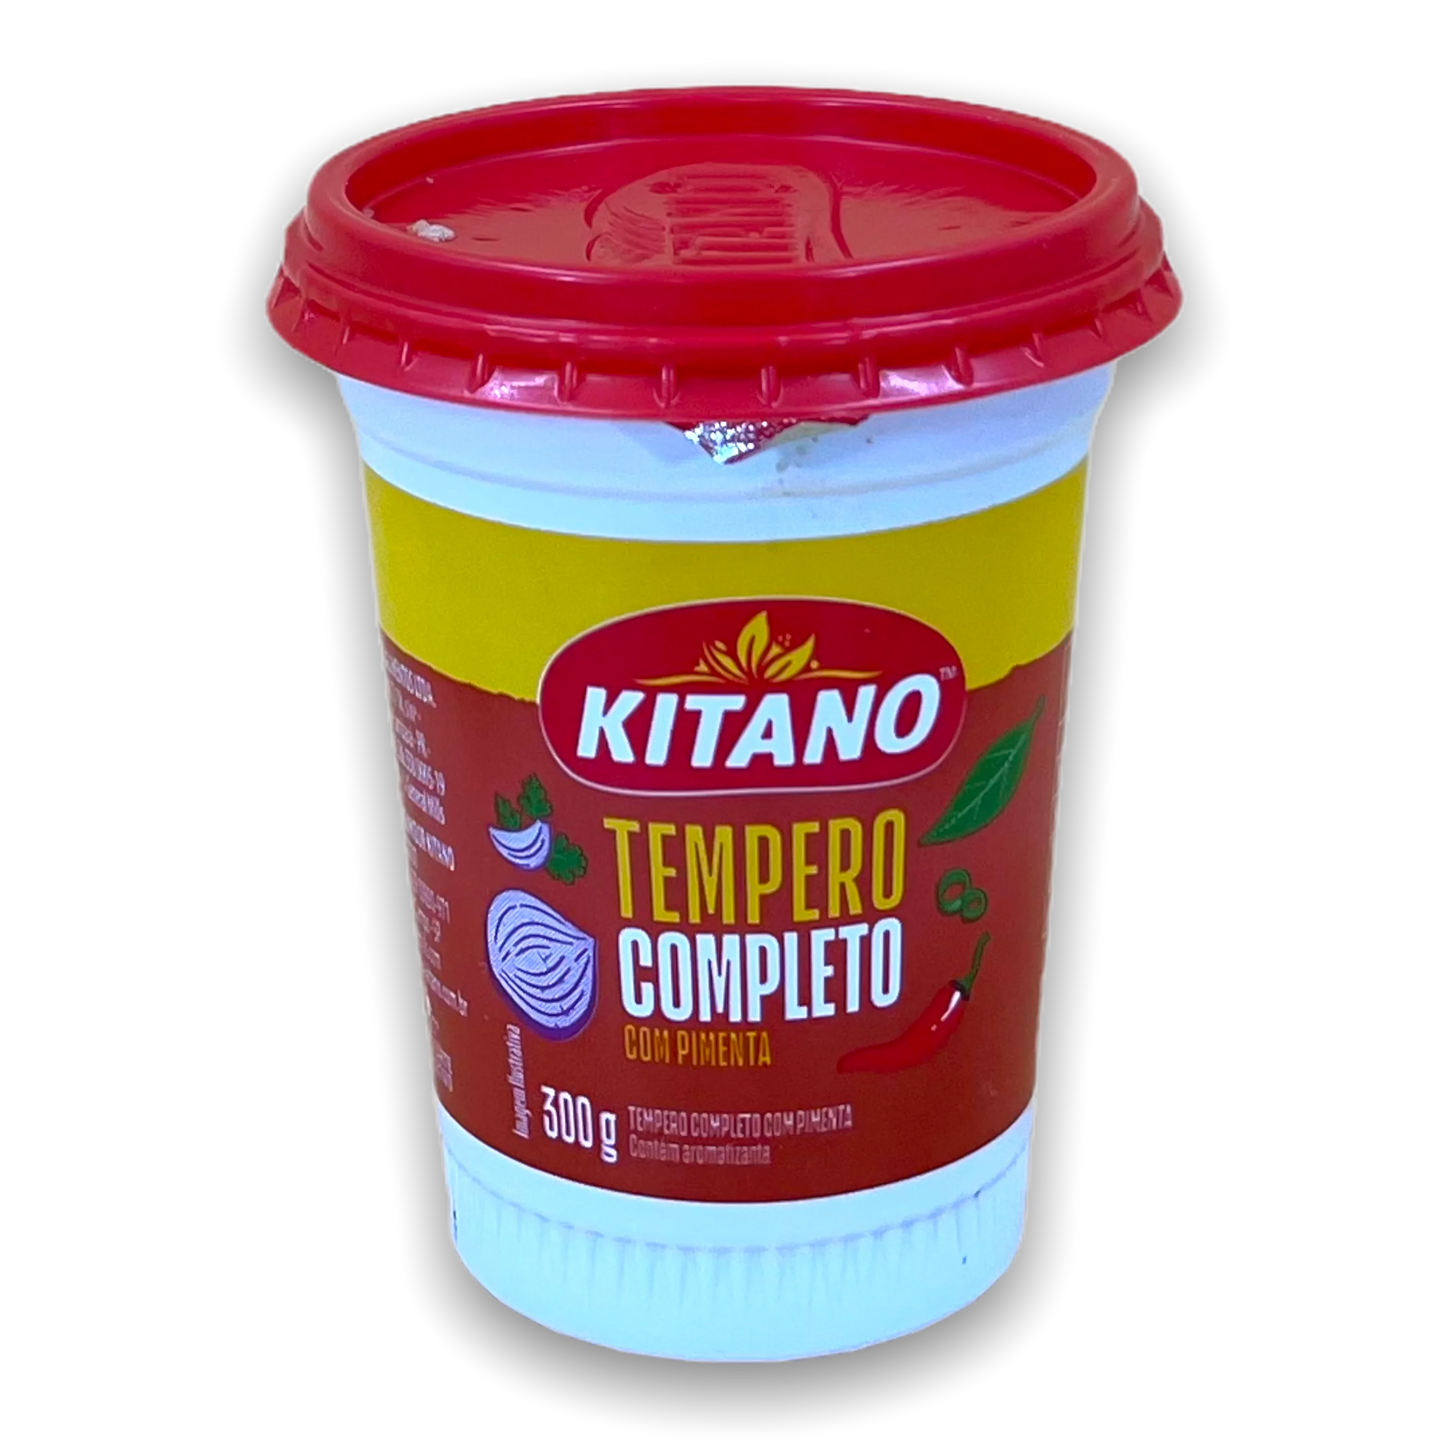 Kitano Tempero Completo com Pimenta 300g